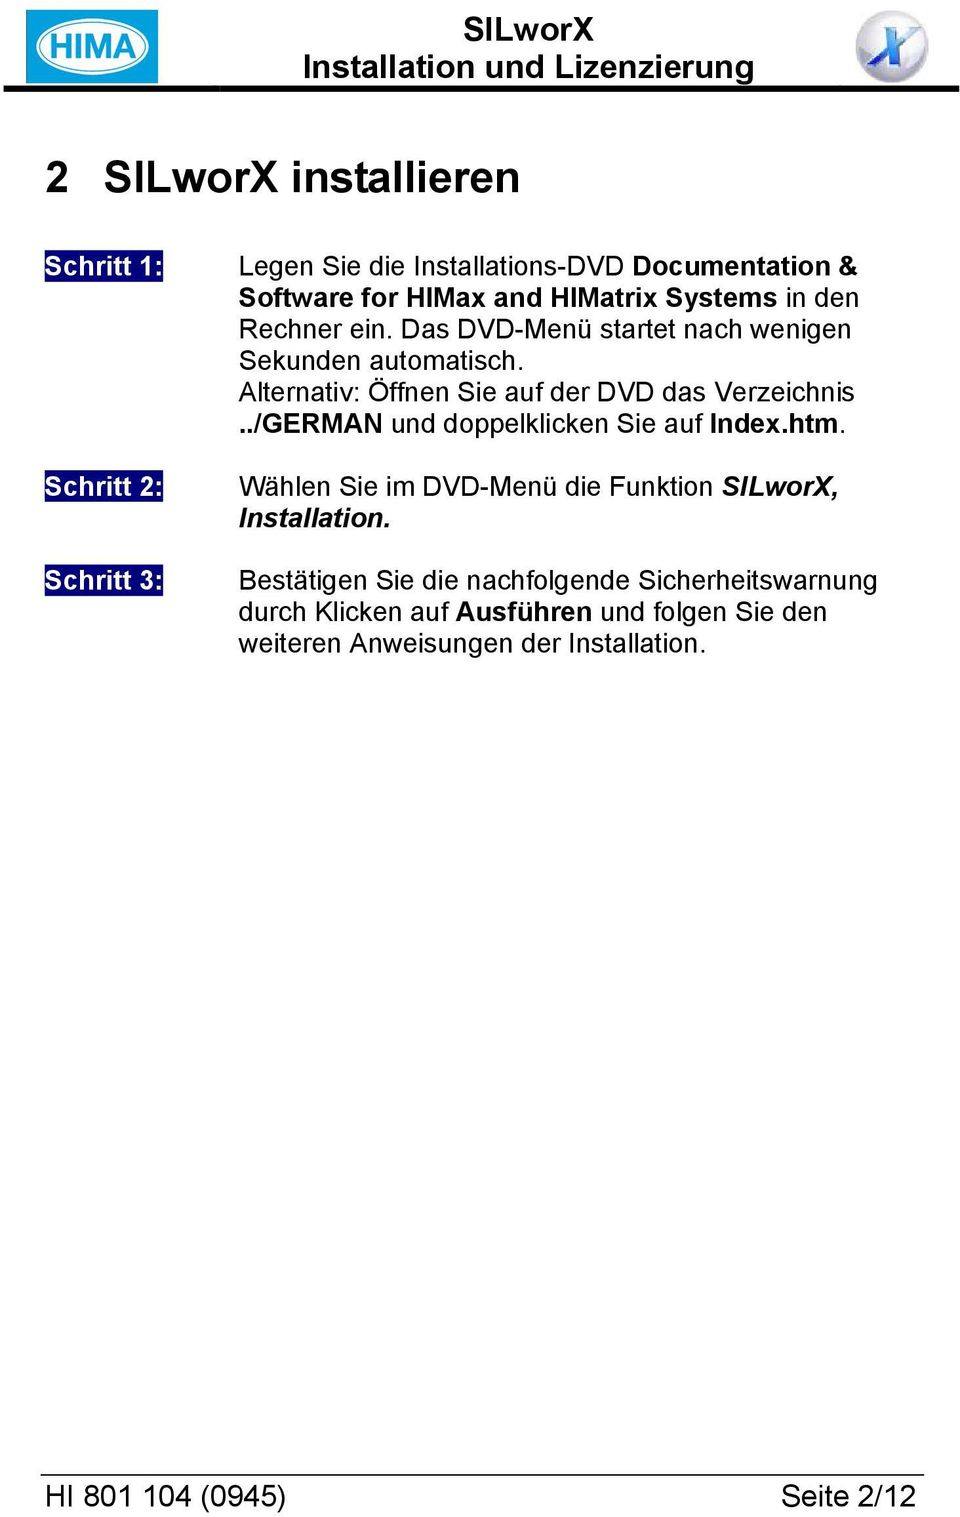 ./GERMAN und doppelklicken Sie auf Index.htm. Wählen Sie im DVD-Menü die Funktion SILworX, Installation.